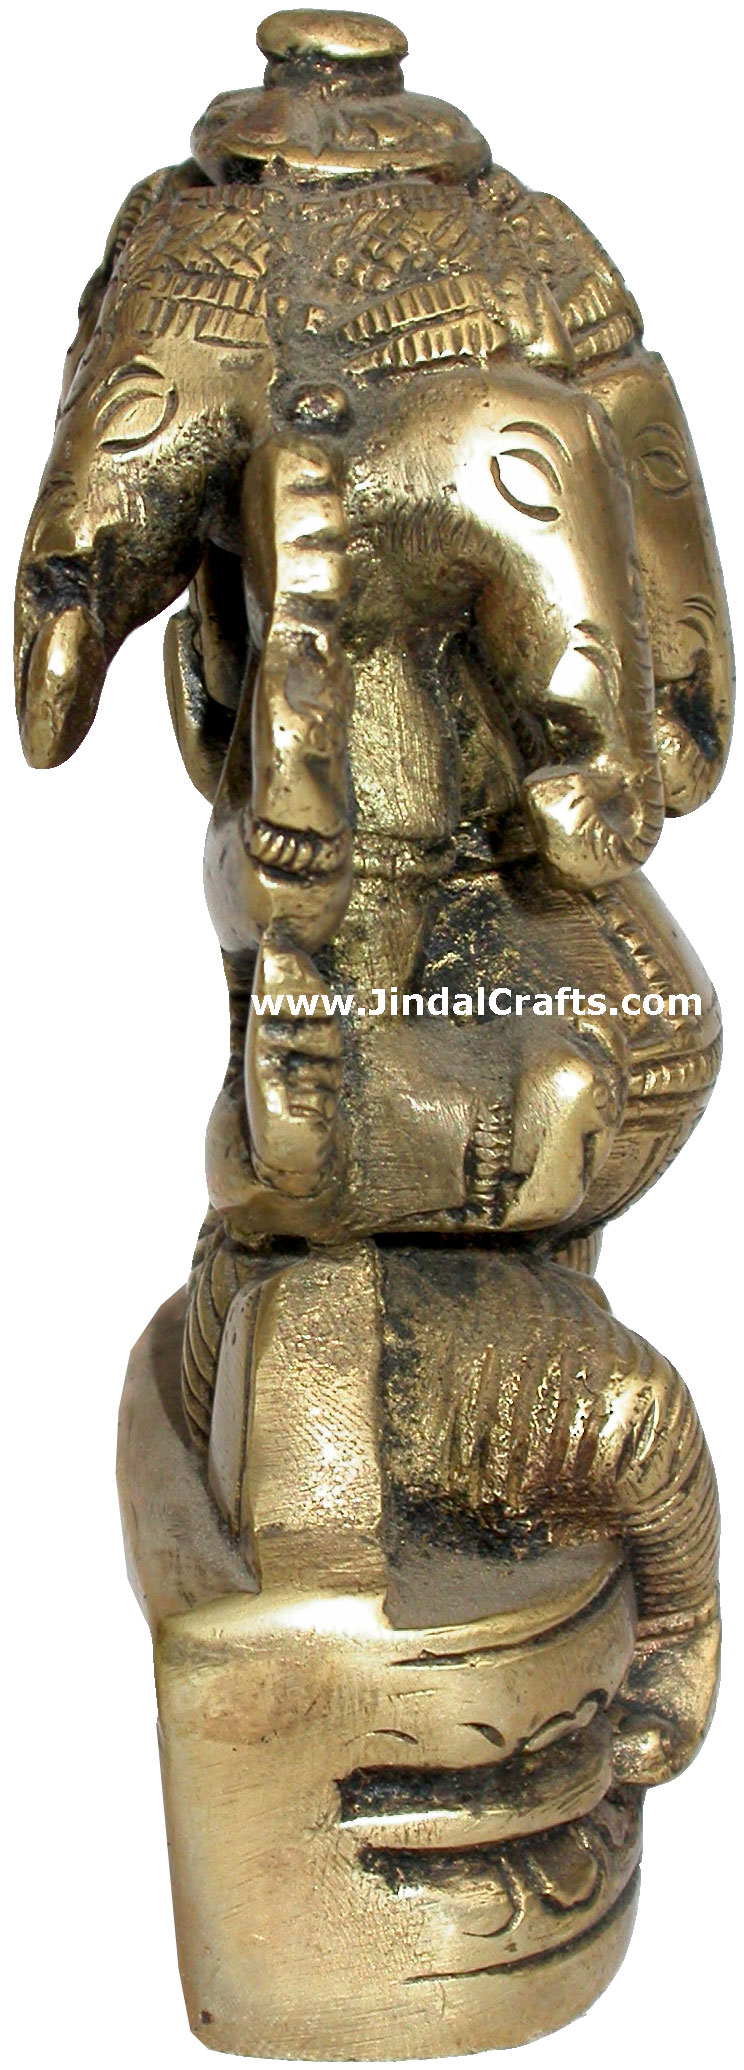 Ganesha Figure Indian God Hindu Religious Artifact Gift